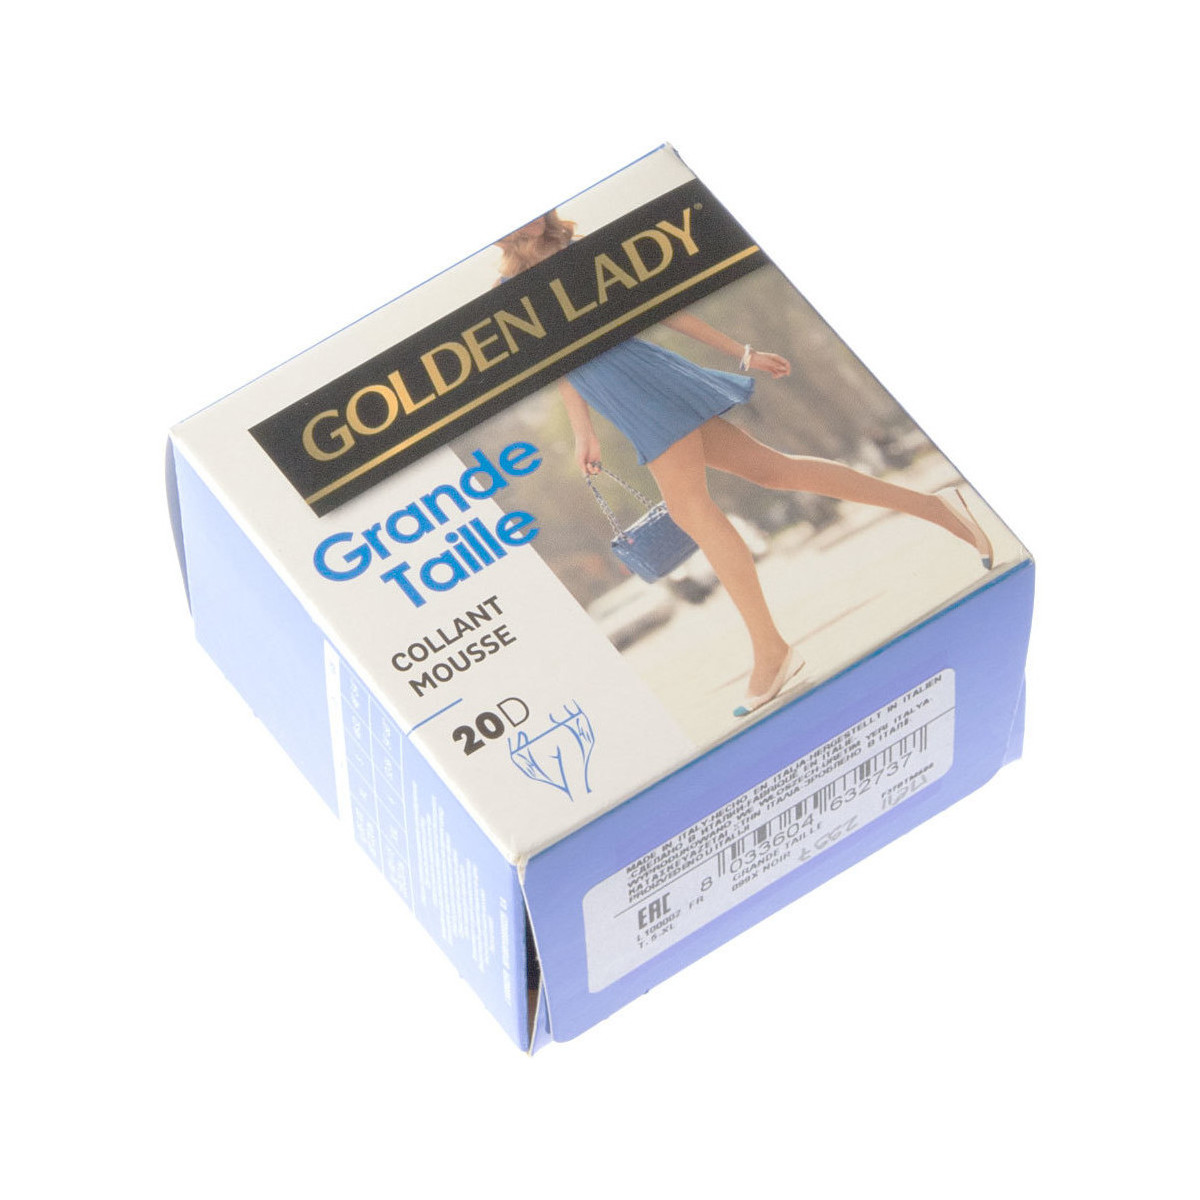 Golden Lady Collant fin - Transparent - Grande taille Noir - Sous